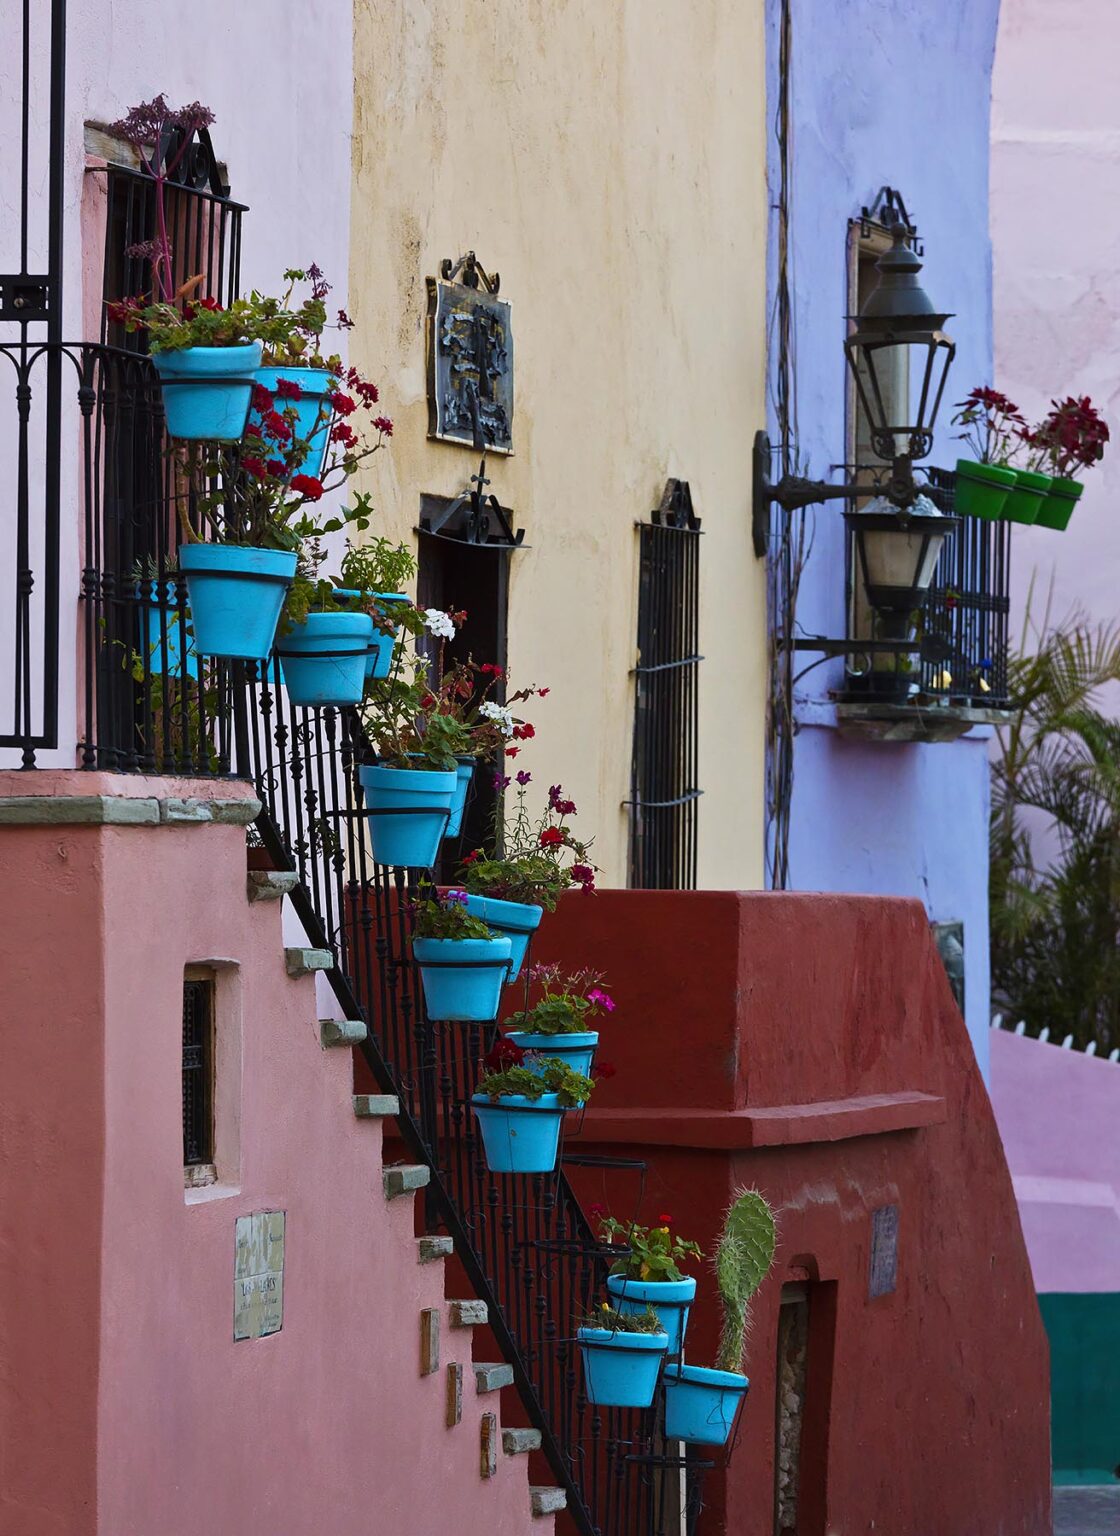 BLUE FLOWER POTS decorate a colorful house - GUANAJUATO, MEXICO